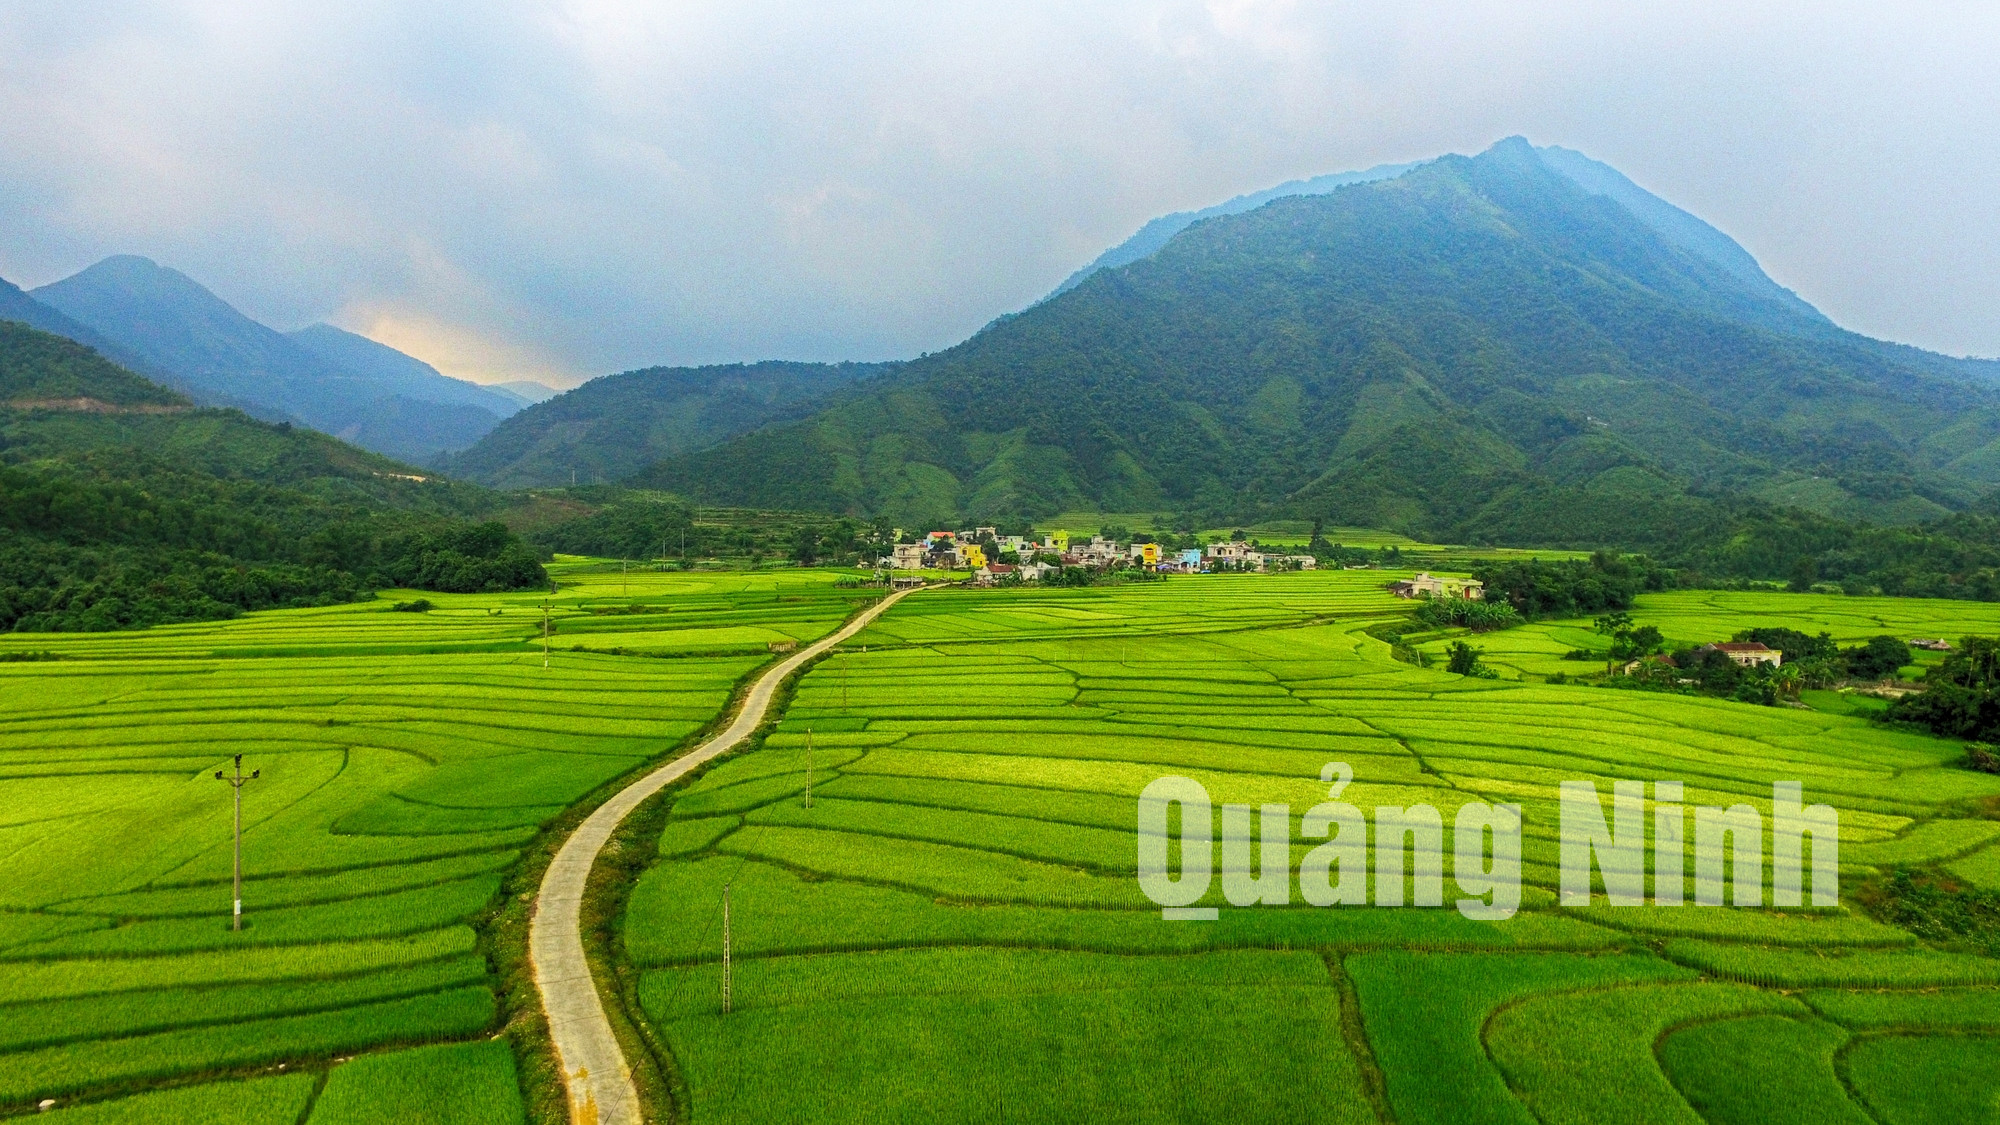 Thác Bạch Vân nằm cách trụ sở UBND xã Quảng An khoảng 10km, trên đường đến thác đi qua những cánh đồng lúa xanh mướt.